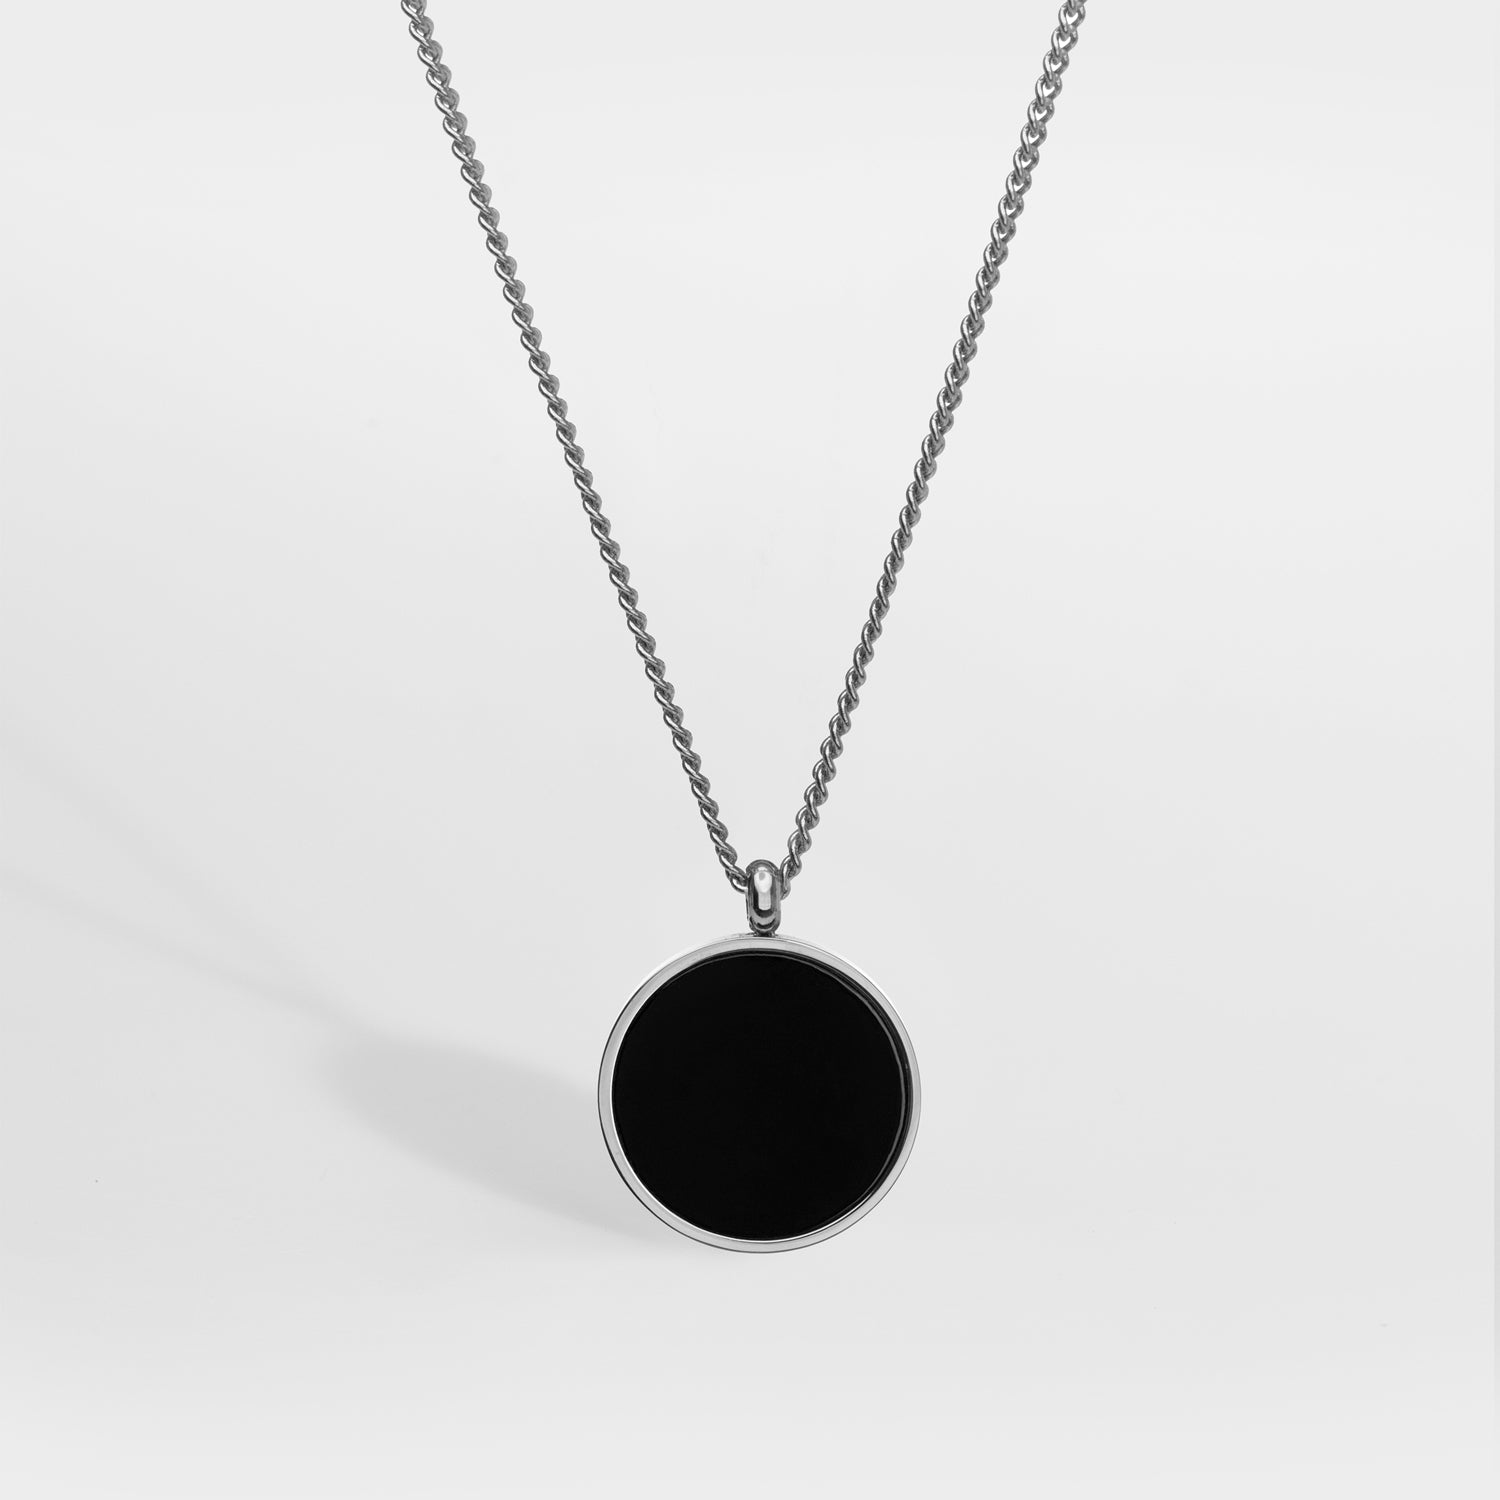 NL Black Onyx pendant - Silver-toned